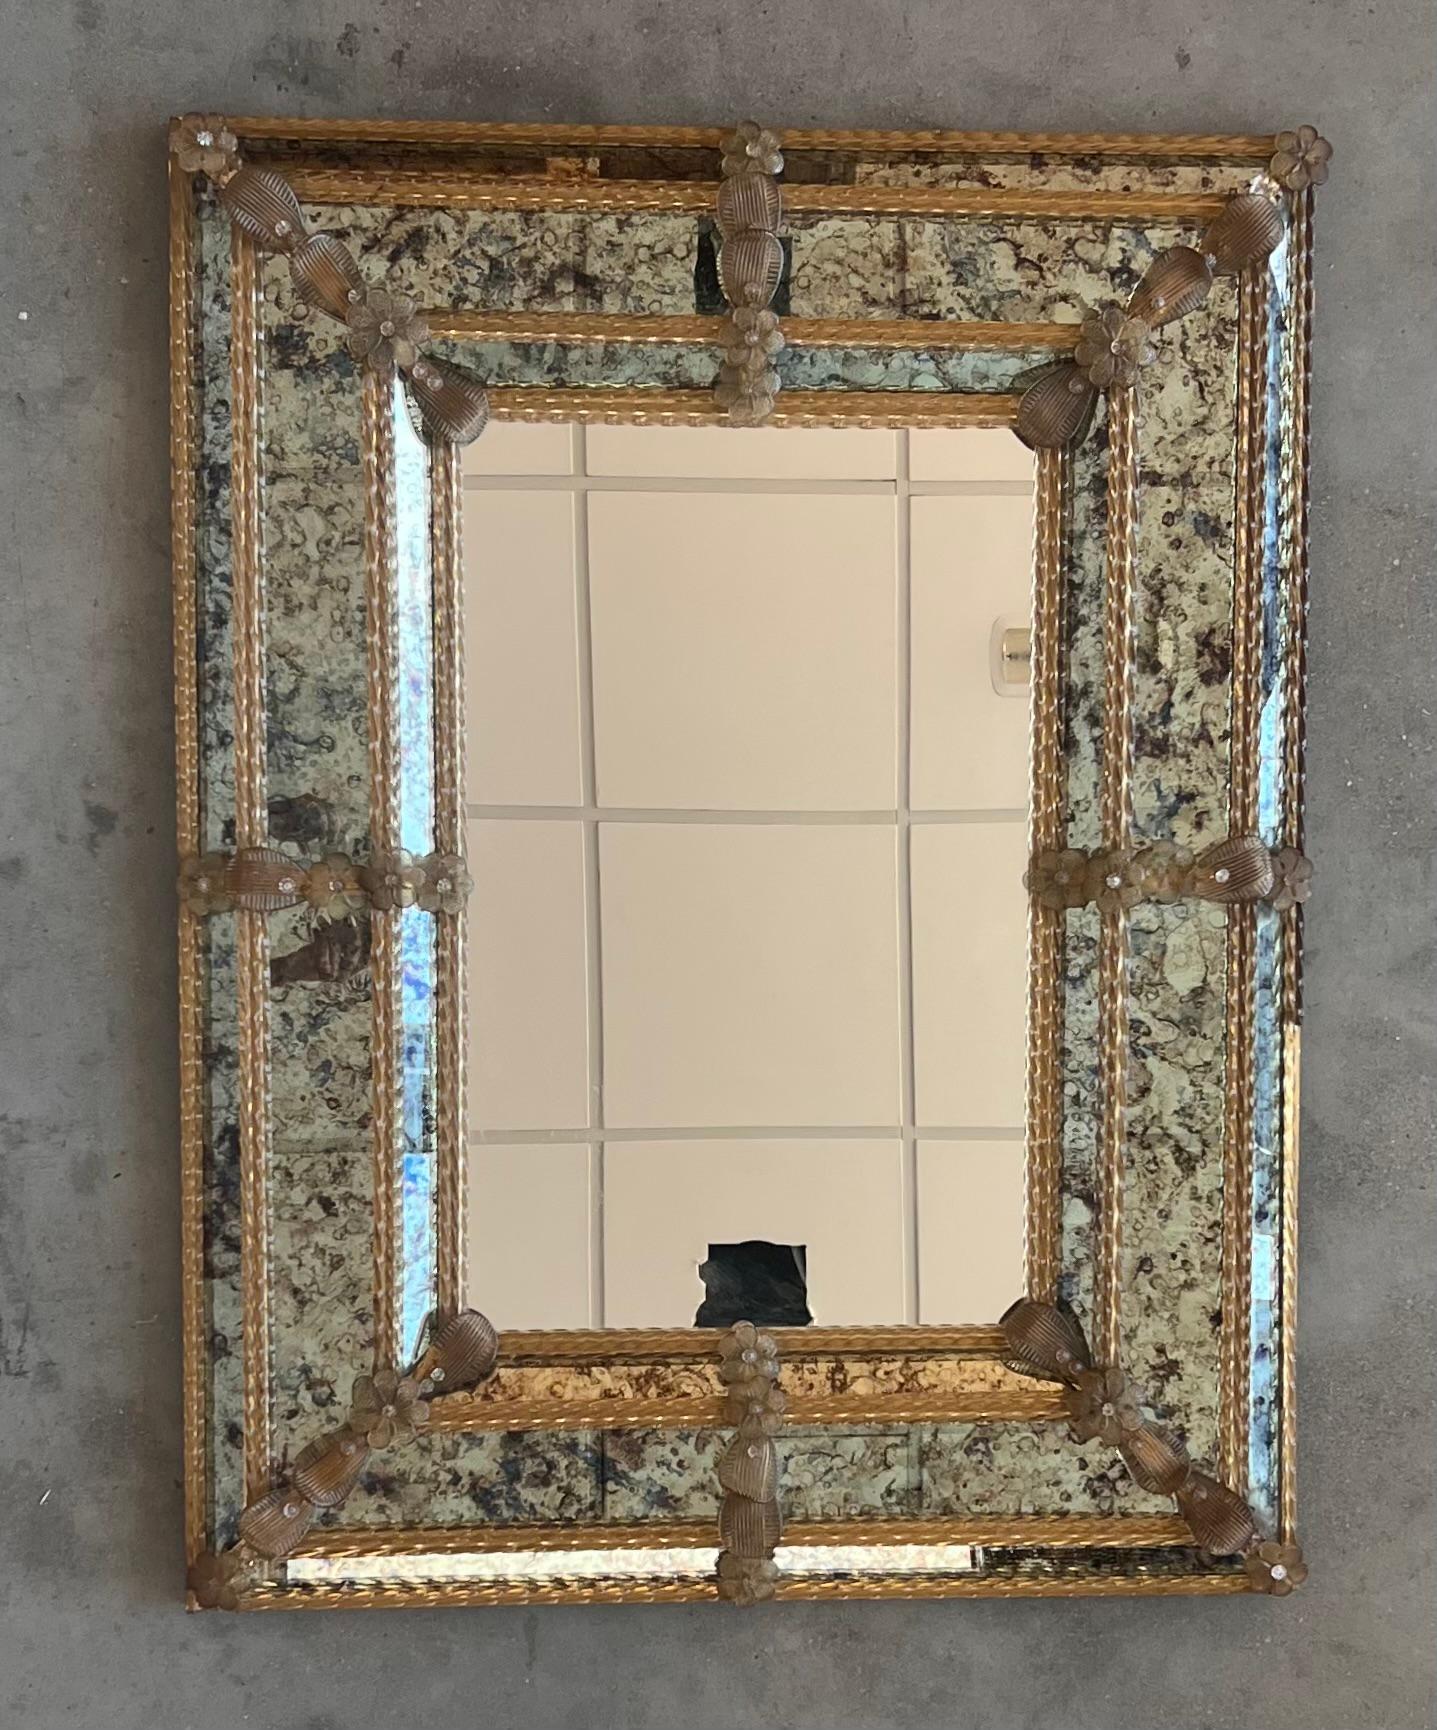 Le miroir vénitien carré présente des panneaux biseautés et des reliefs sculptés.  Le miroir a été fabriqué et argenté à la main. Le panneau central présente une légère finition antiquaire tandis que le pourtour présente une antiquité plus